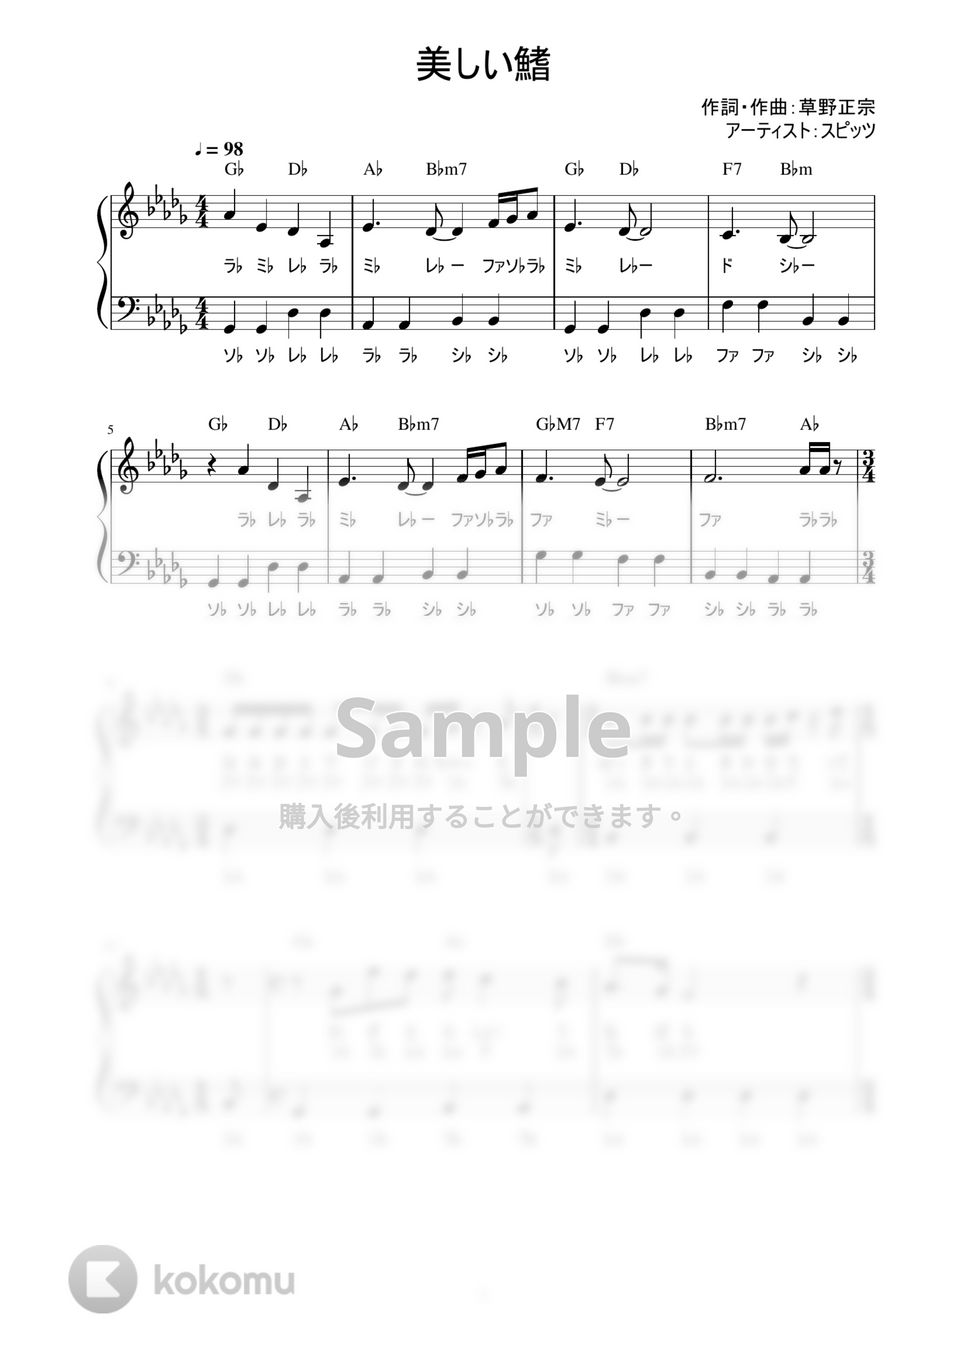 スピッツ - 美しい鰭 (かんたん / 歌詞付き / ドレミ付き / 初心者) by piano.tokyo